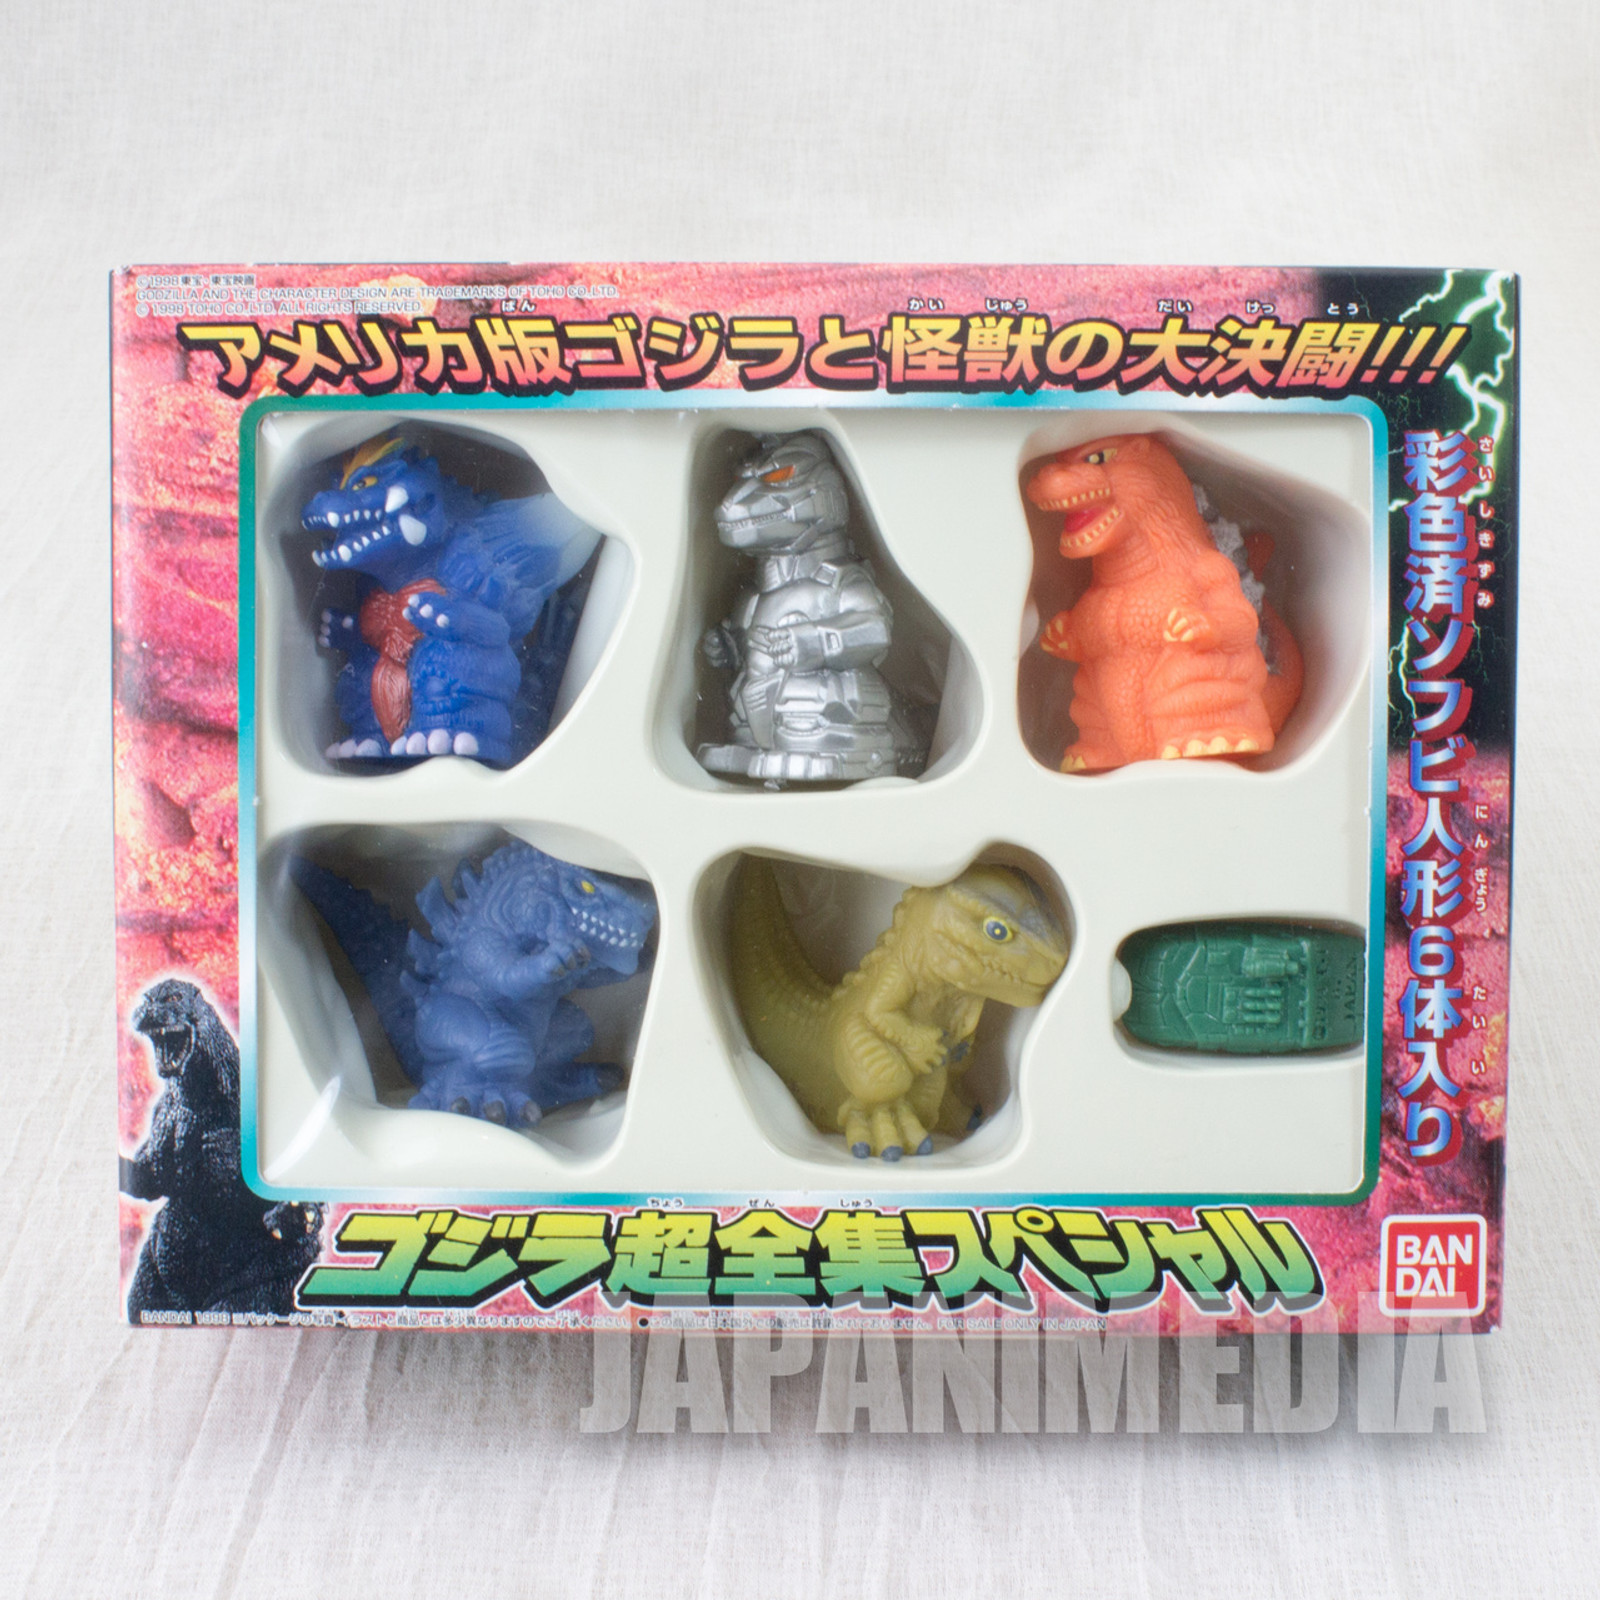 Godzilla Mini Soft Vinyl Figure Collection 6pc BANDAI JAPAN TOKUSATSU